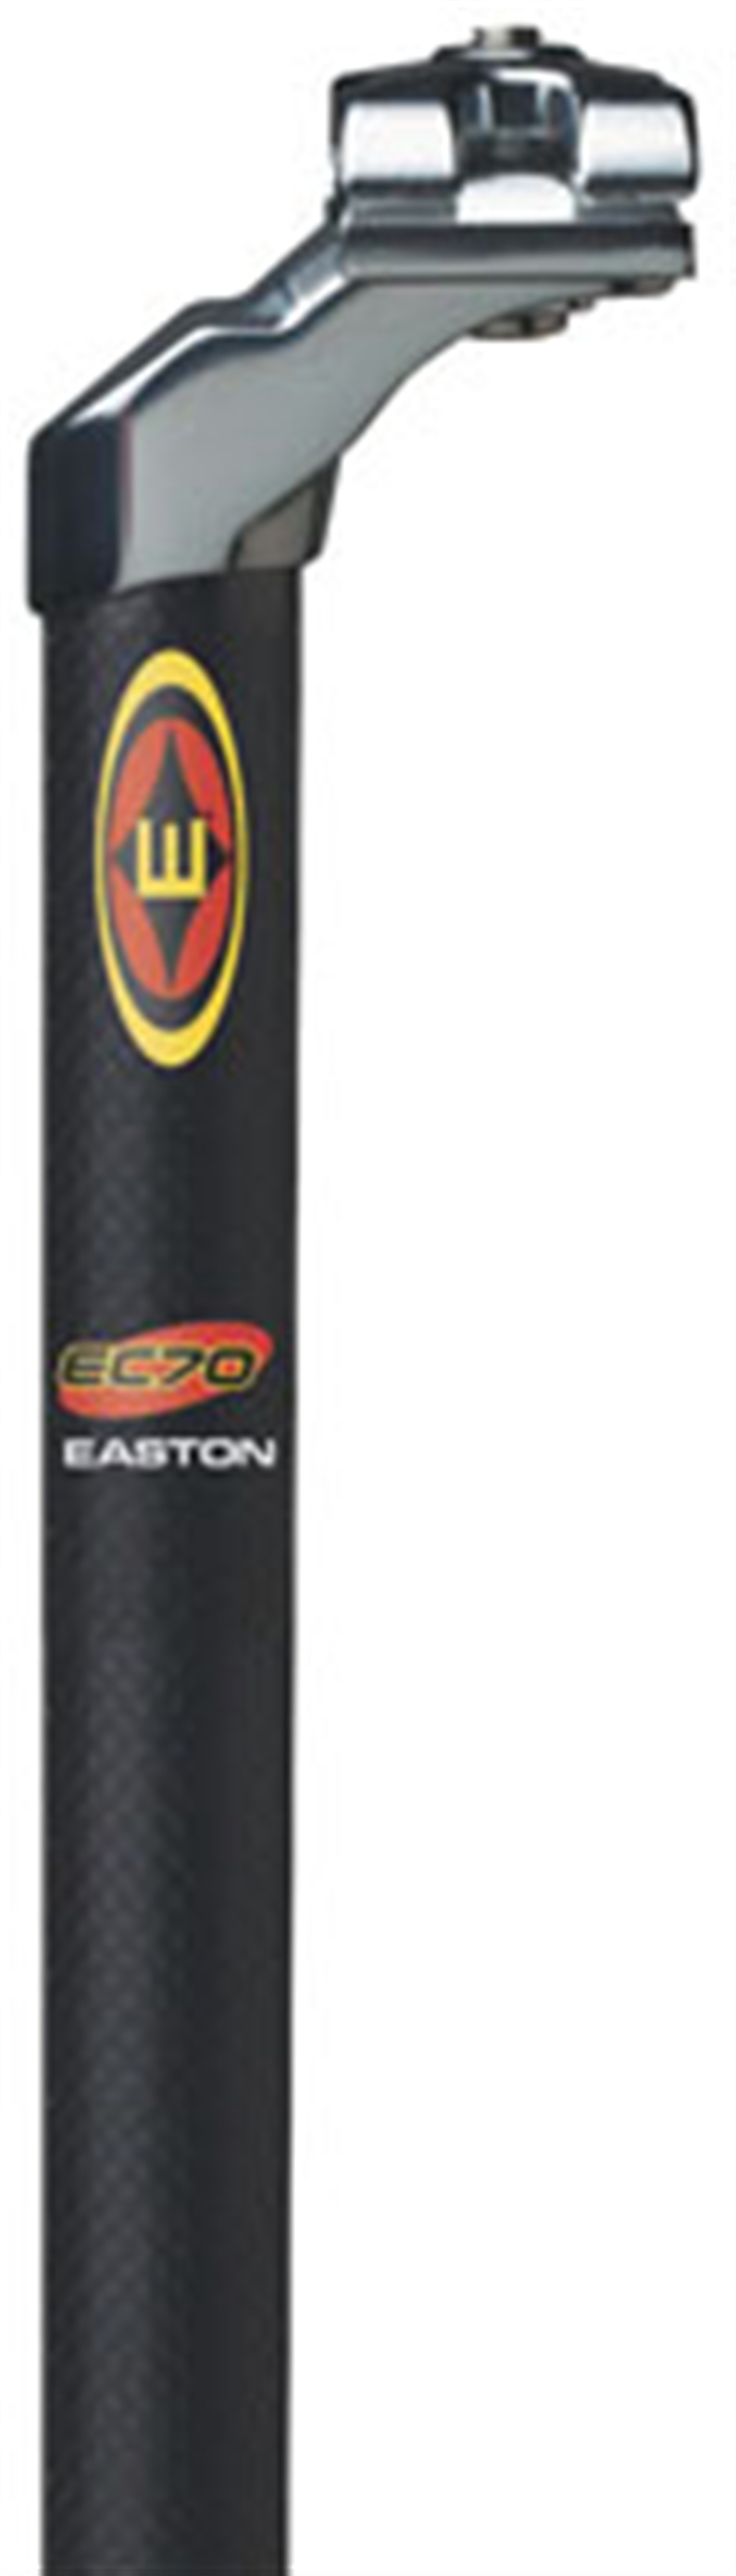 EC70 Carbon MTB Seatpost